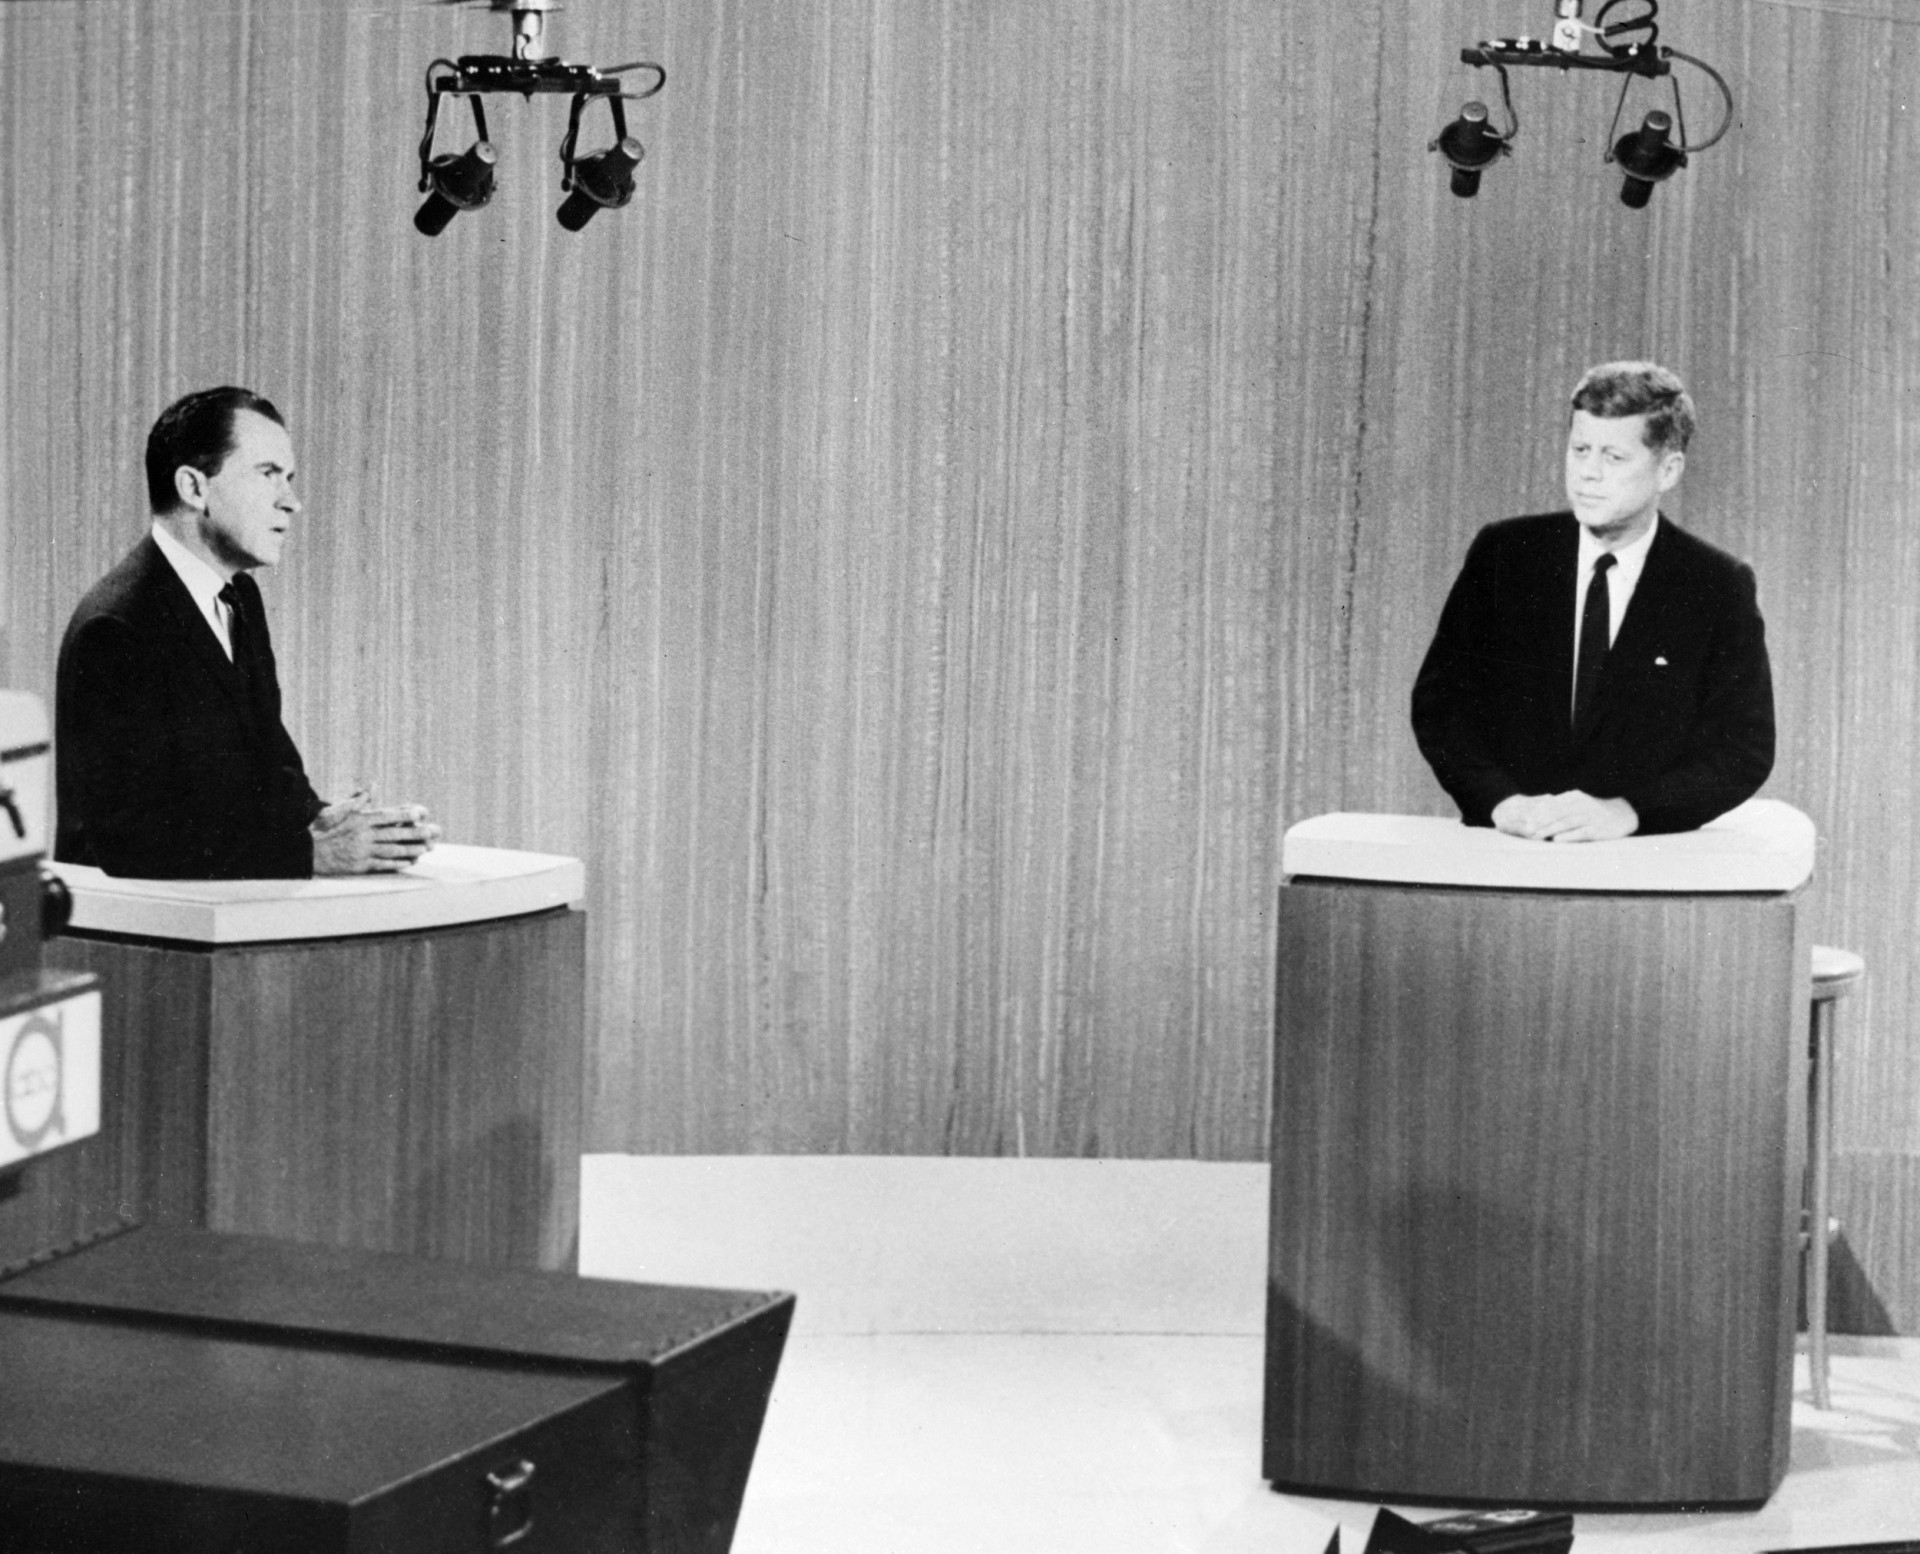 <p>Der Wahlkampf 1960 zwischen JFK und Nixon zeichnete sich durch die ersten im Fernsehen übertragenen Debatten aus, ein Schritt in Richtung eines moderneren Wahlkampfs. Analysten glauben, Kennedy konnte das neue Medium zu seinem Vorteil nutzen, indem er direkt in die Kamera zu den Wählern sprach.</p><p>Sie können auch mögen:<a href="https://de.starsinsider.com/n/448841?utm_source=msn.com&utm_medium=display&utm_campaign=referral_description&utm_content=689702"> Diese Lebensmittel laufen nie (oder zumindest fast nie) ab</a></p>